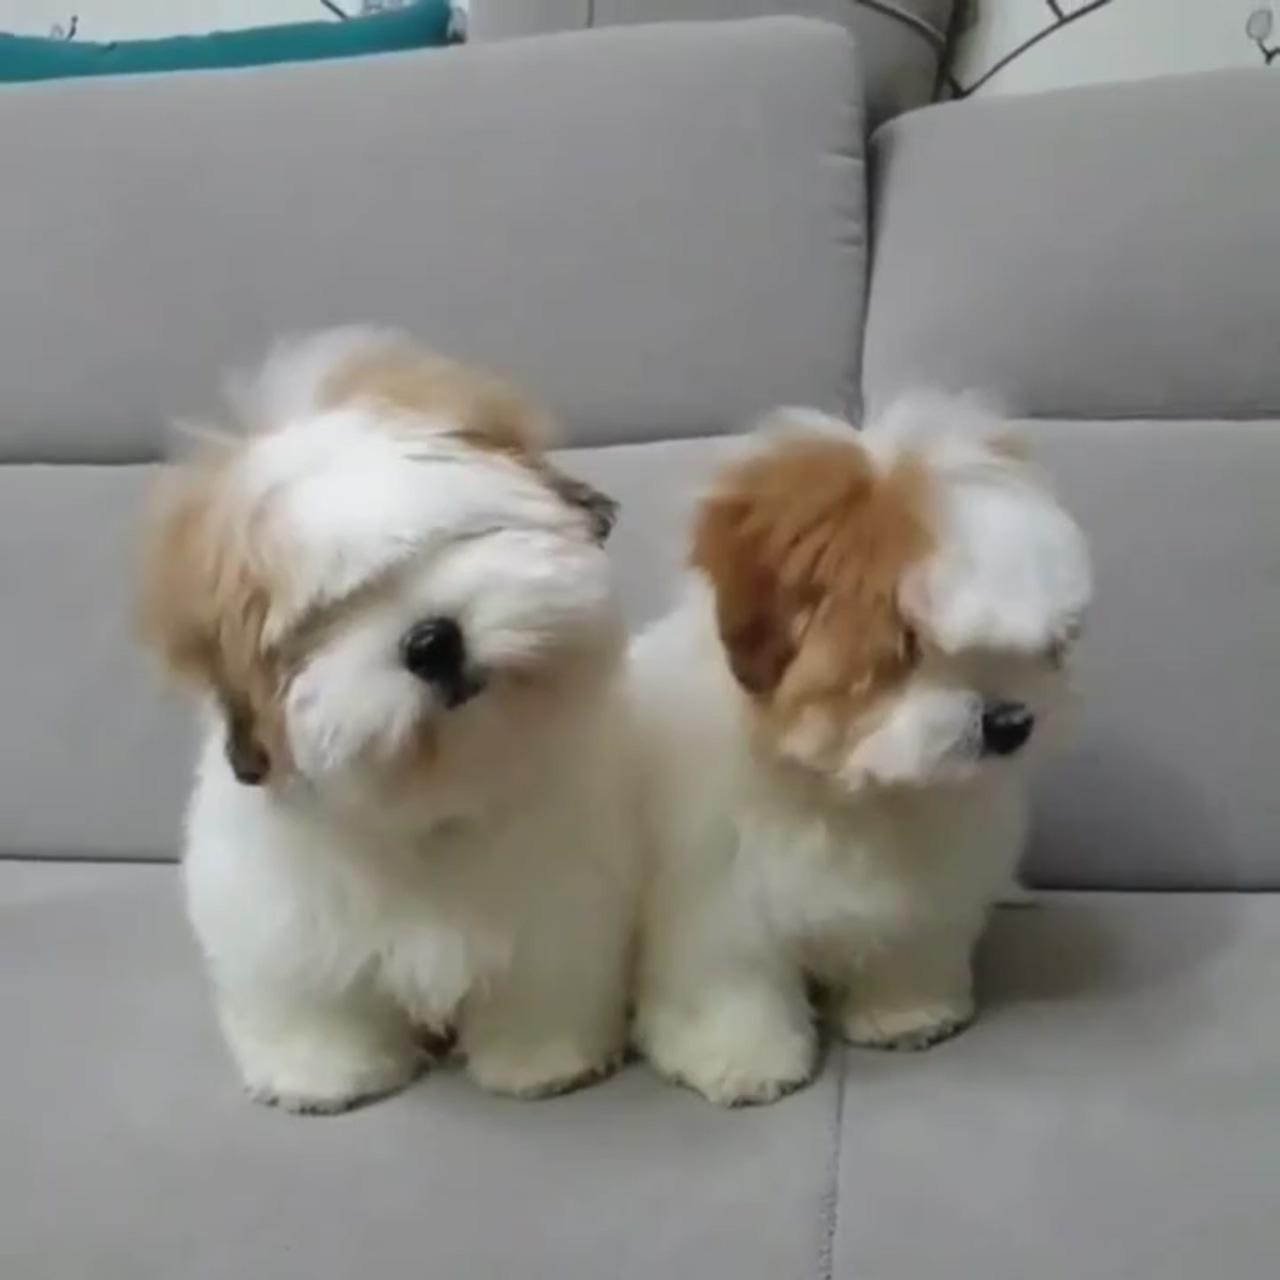 Fluffy; cute fluffy puppies